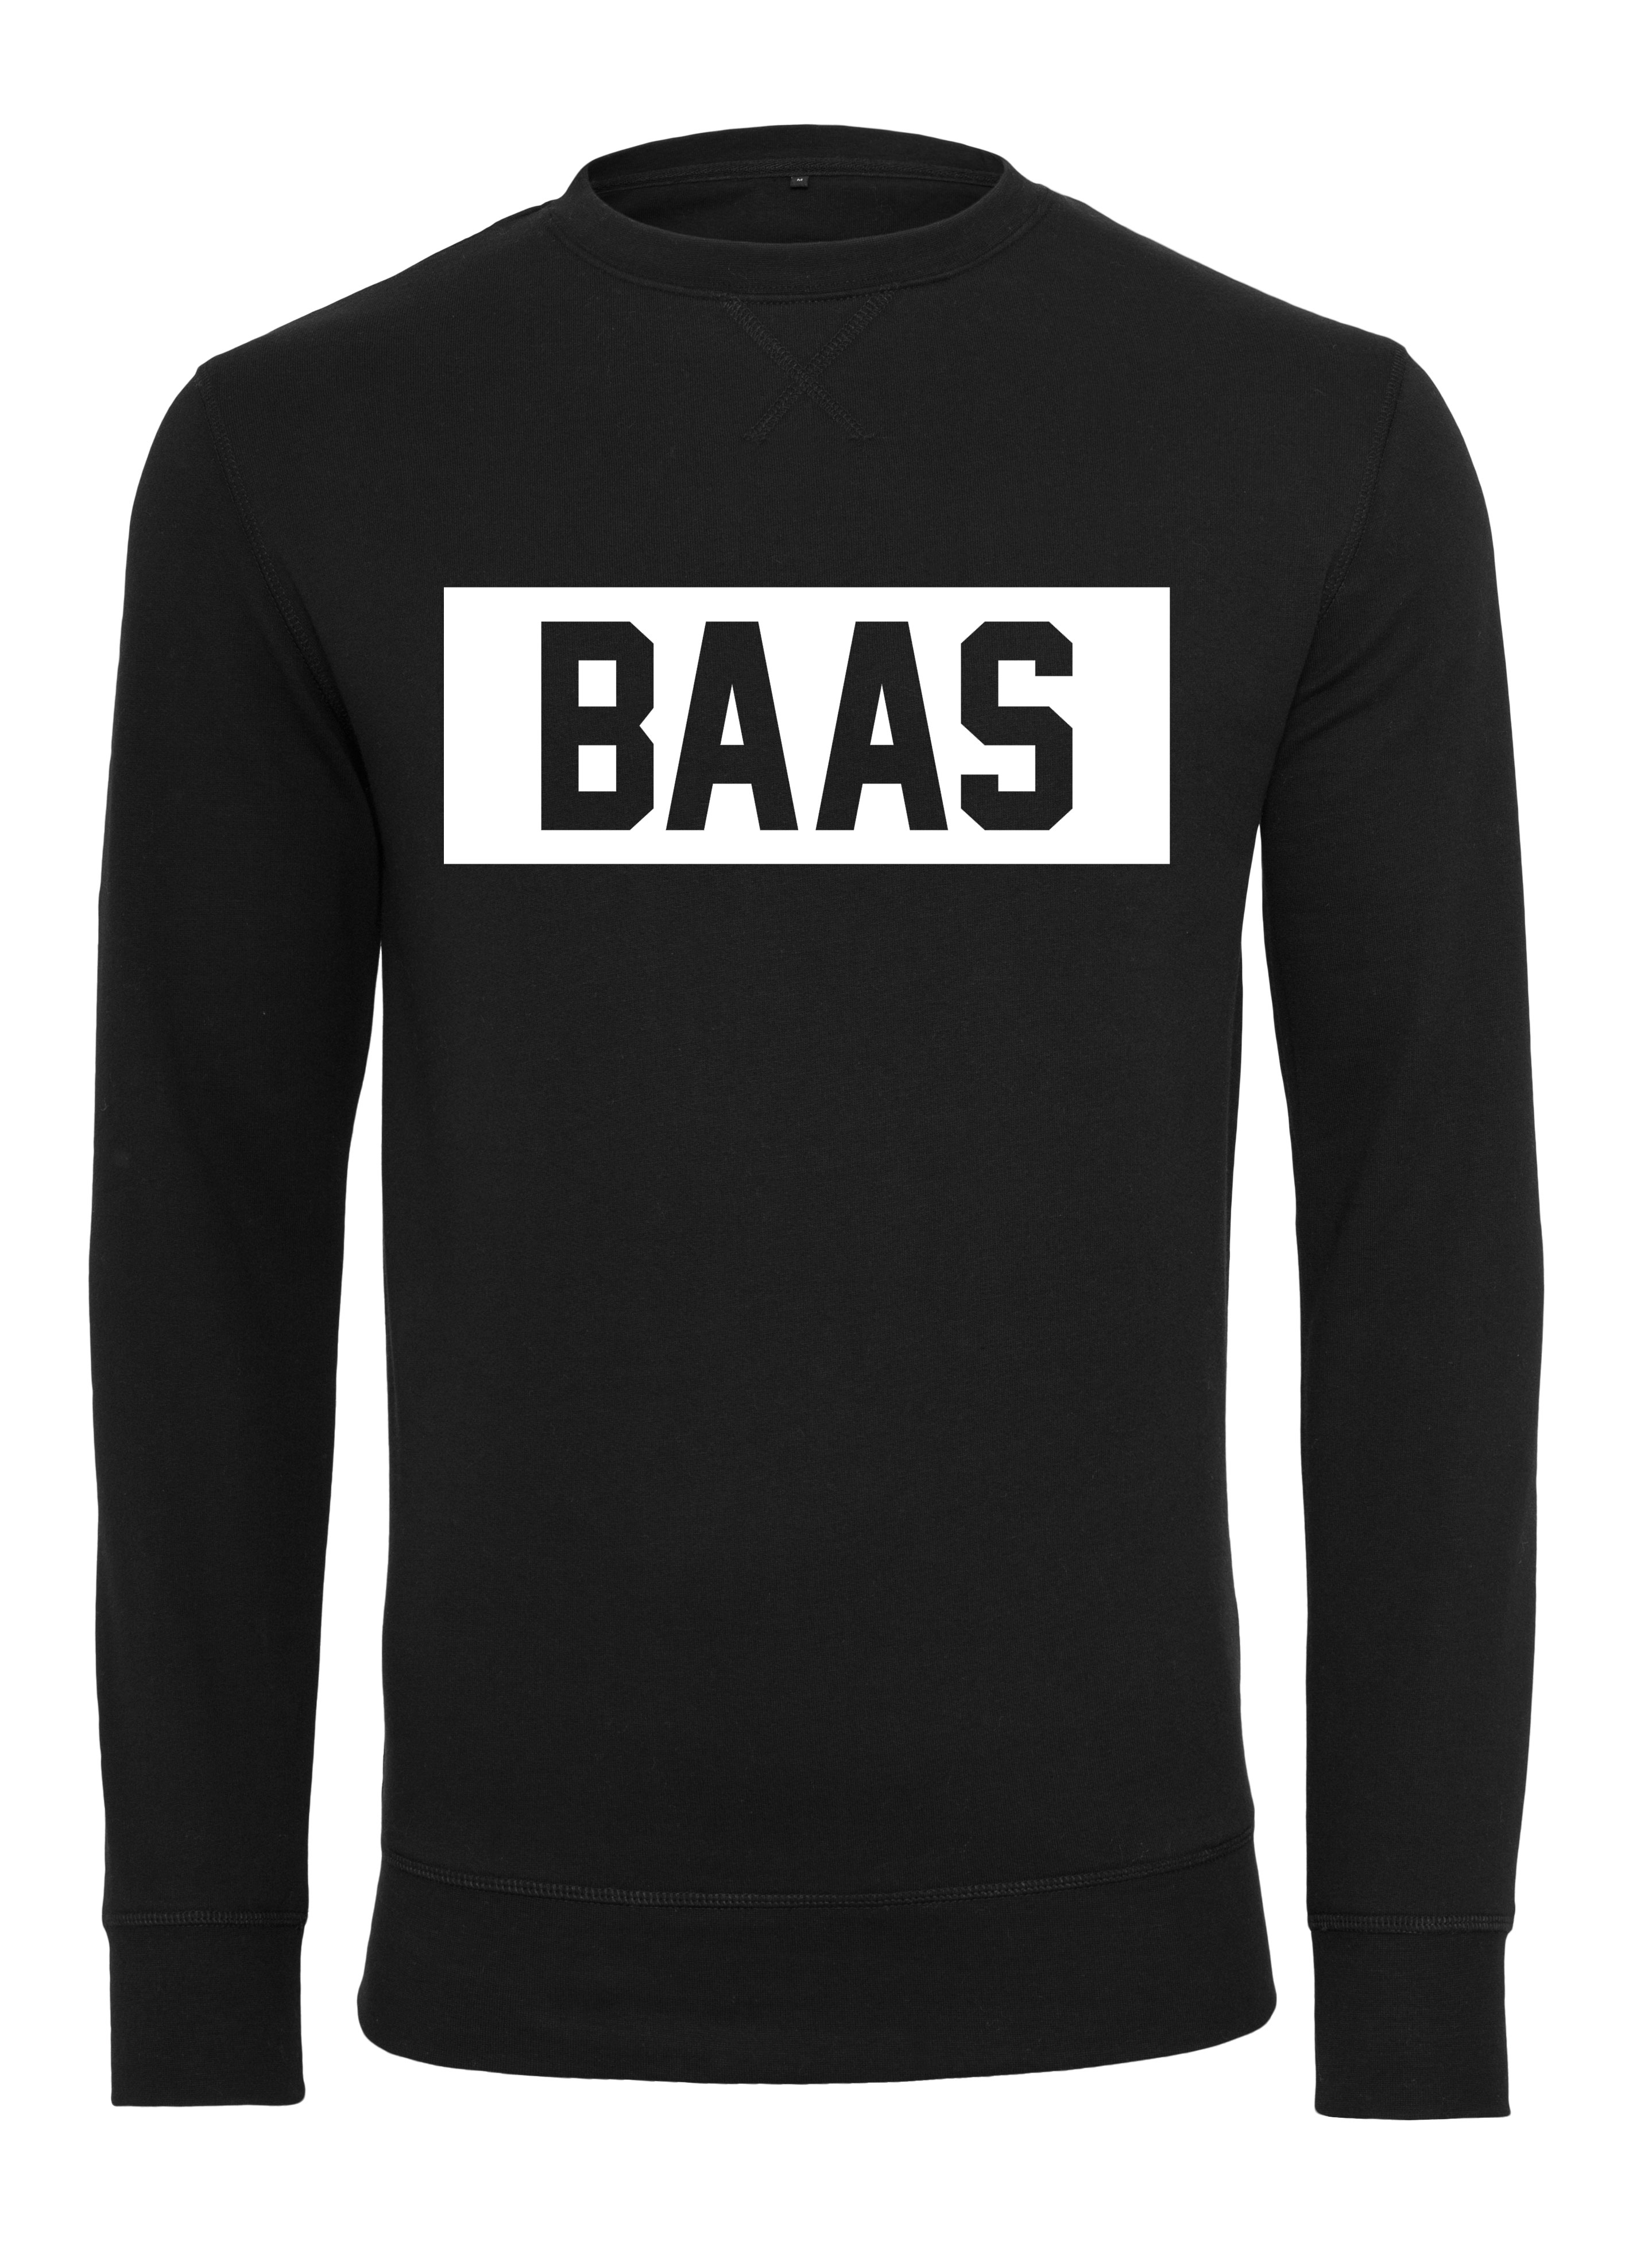 Christian Voorwaarden Fantasie Heren Sweater zwart Baas - Badass Fashion